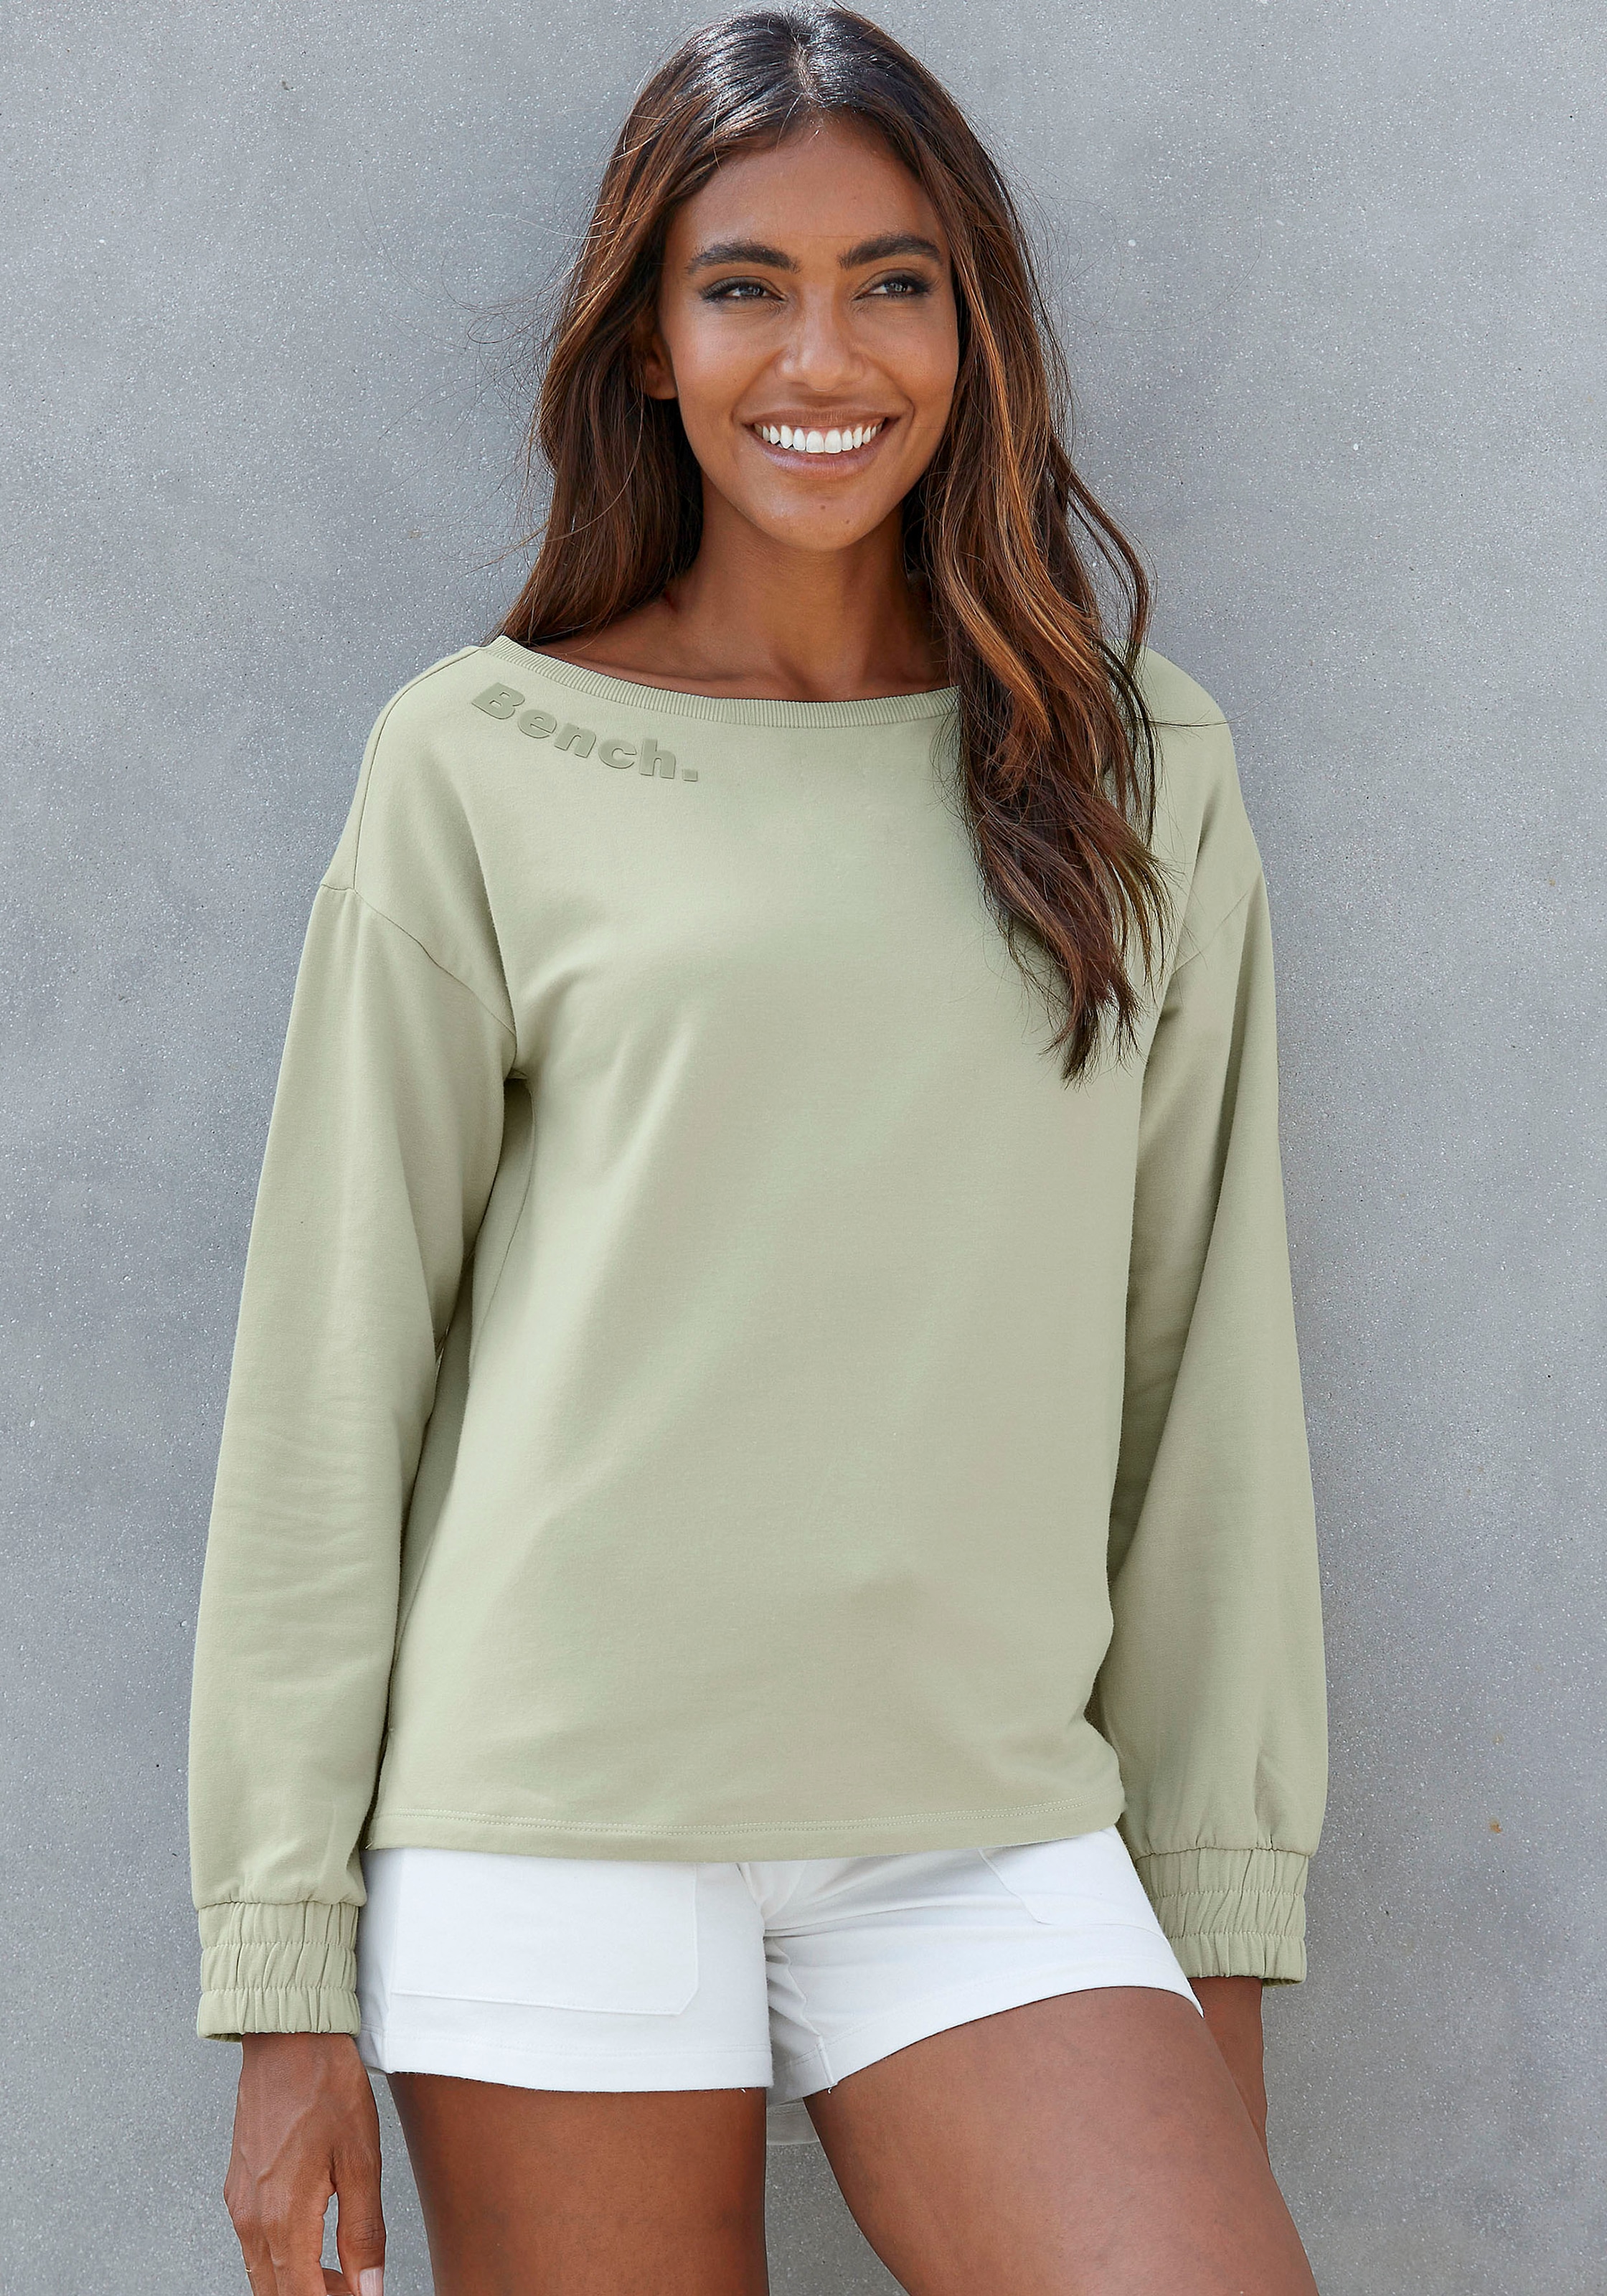 Bench. Loungewear Sweatshirt, mit Jelmoli-Versand Schweiz online gerafften bei Ärmelbündchen, Loungeanzug kaufen